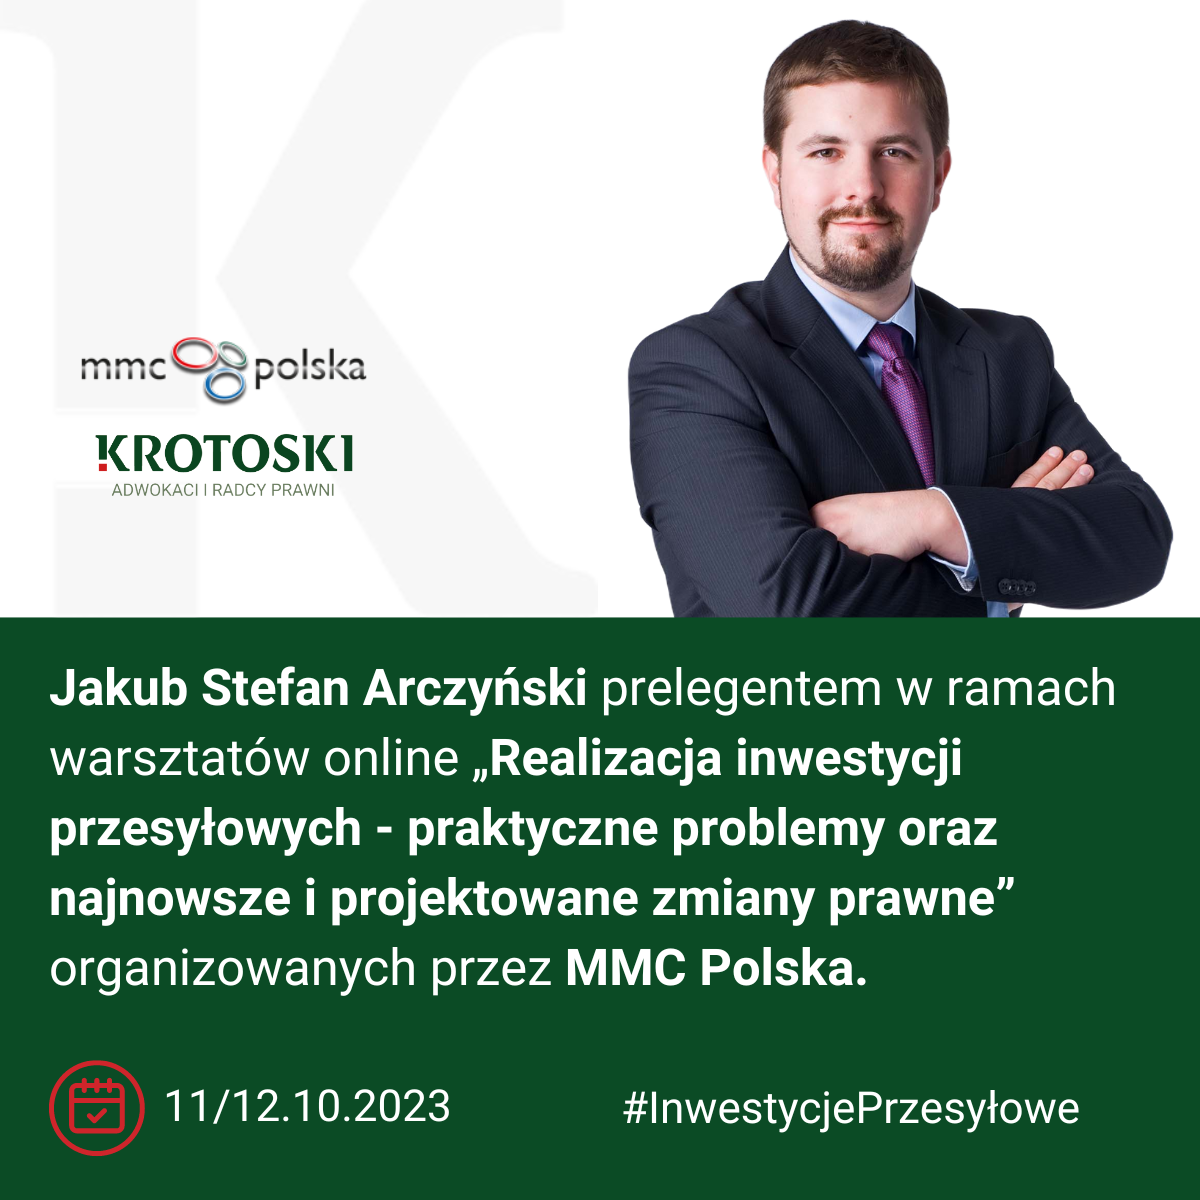 Jakub Stefan Arczyński prelegentem podczas warsztatów online organizowanych przez MMC Polska